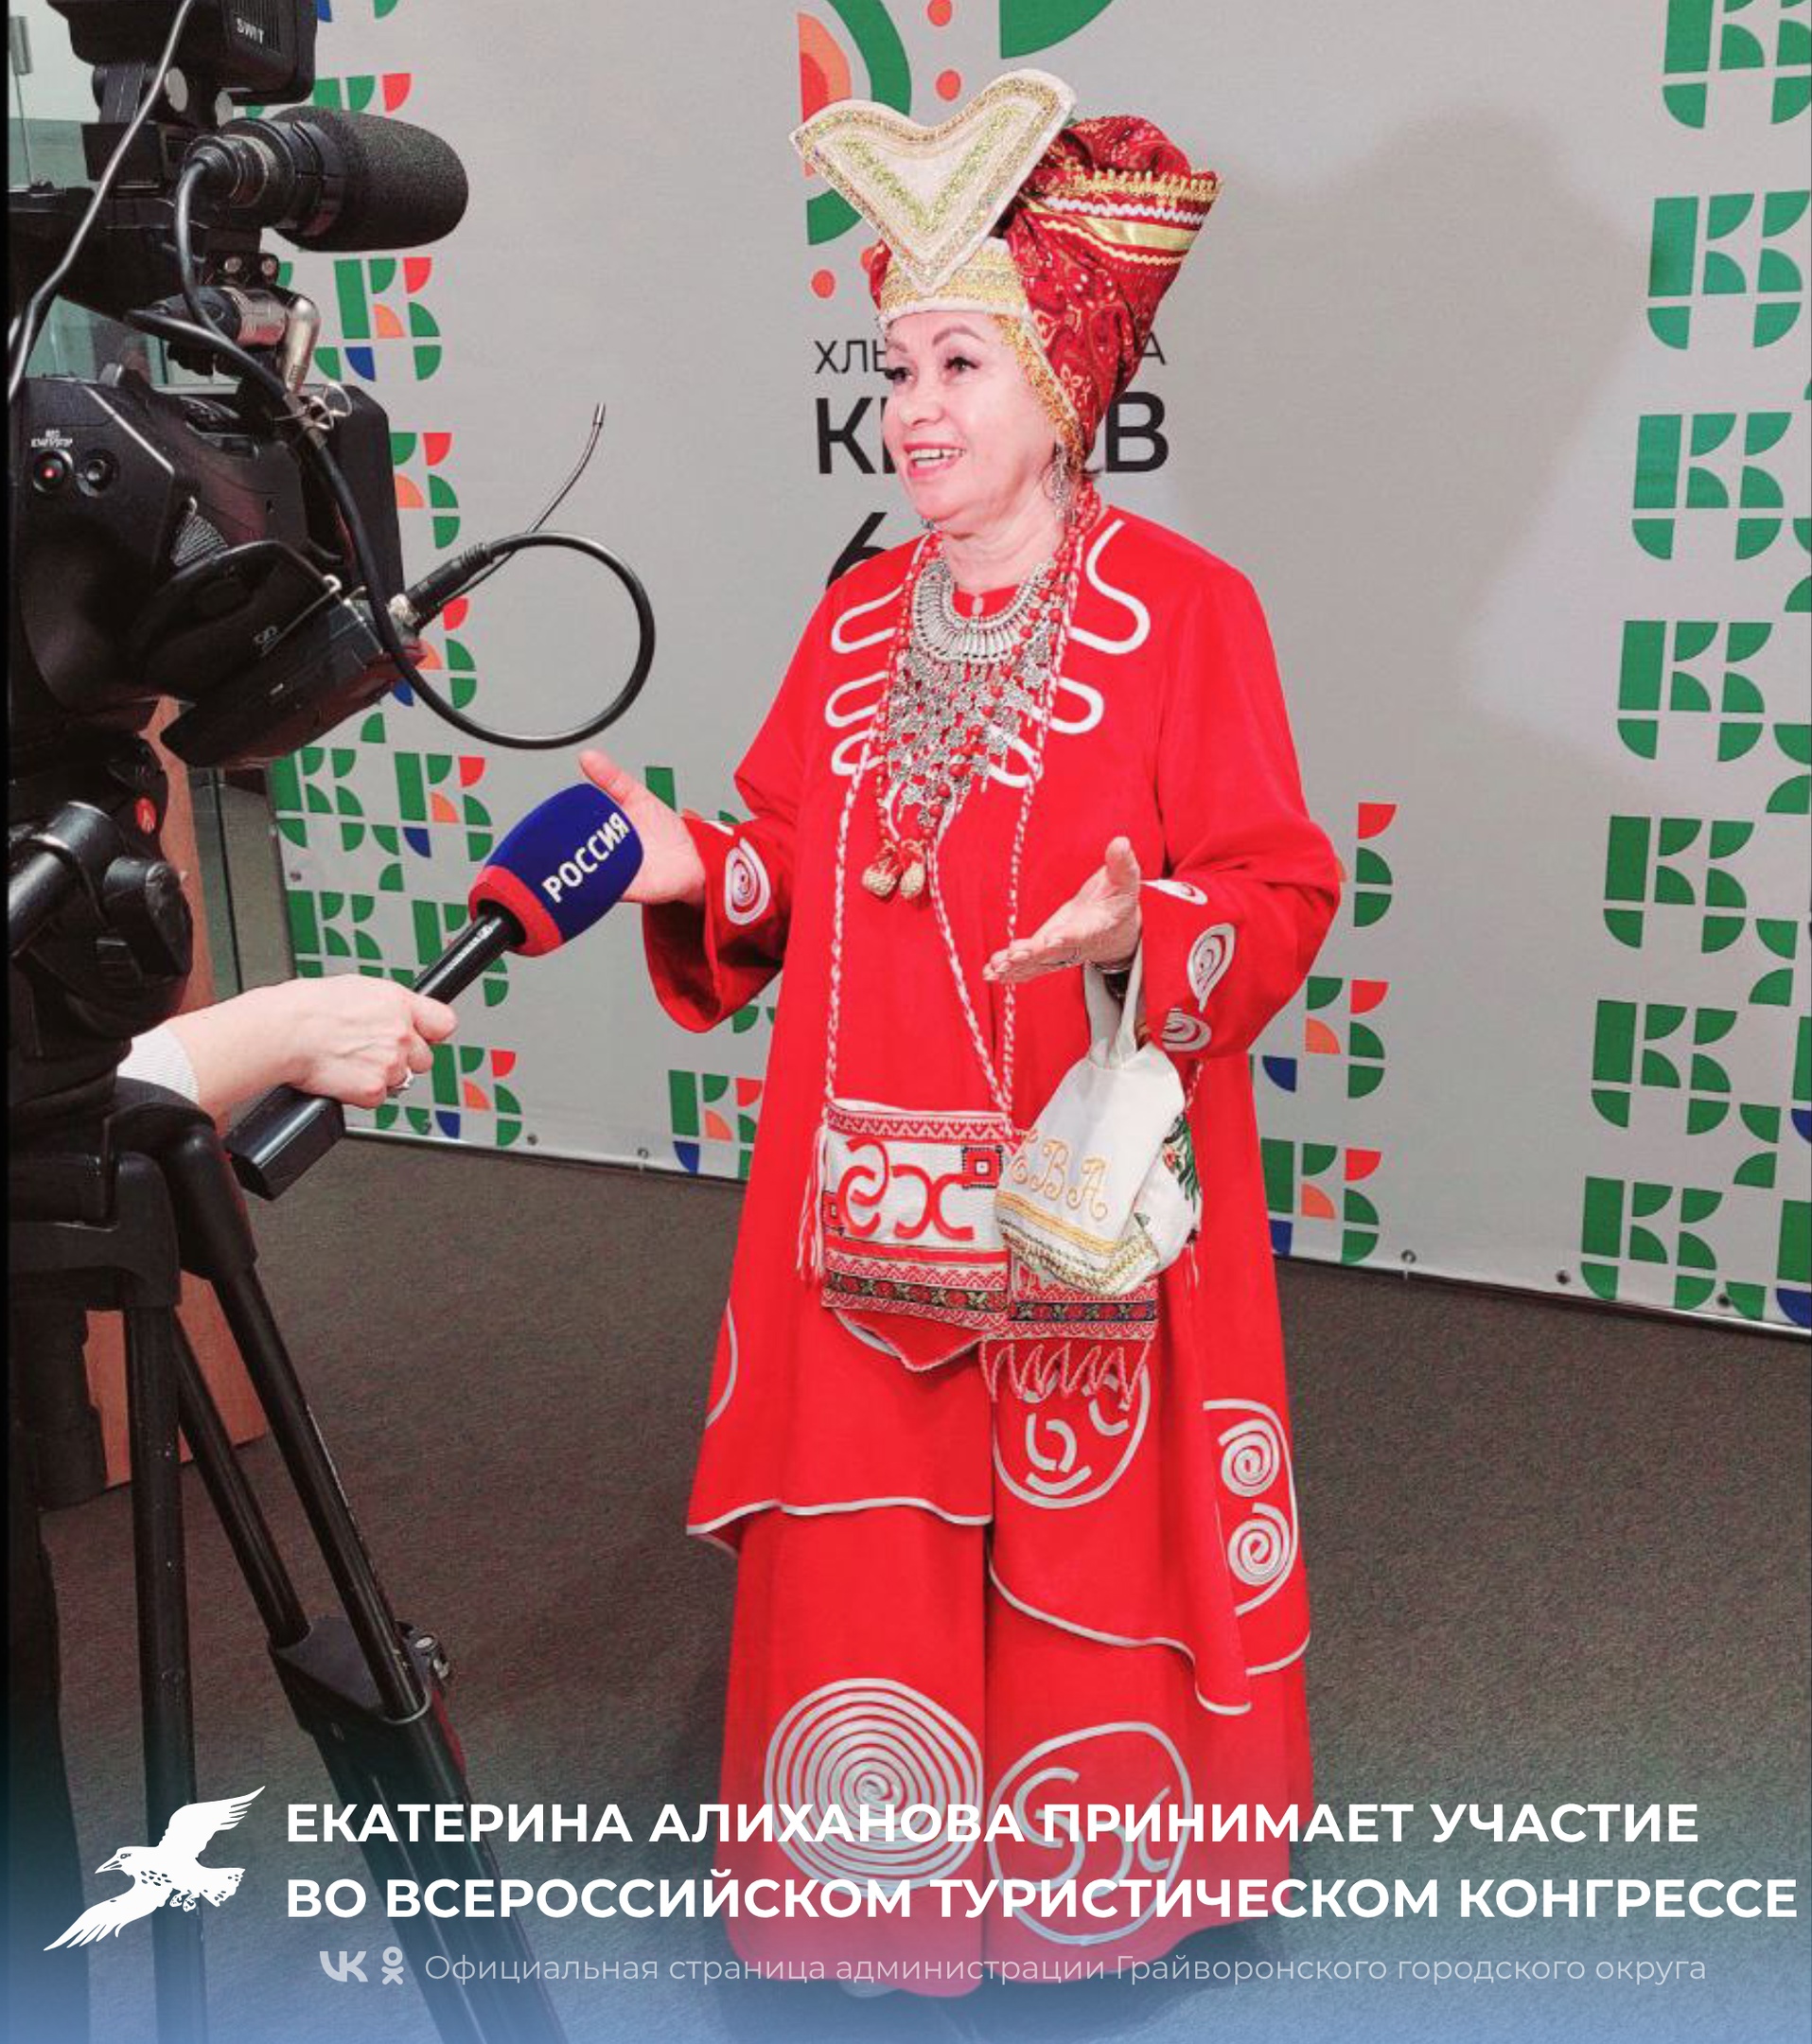 Екатерина Алиханова принимает участие в Первом всероссийском туристическом конгрессе.